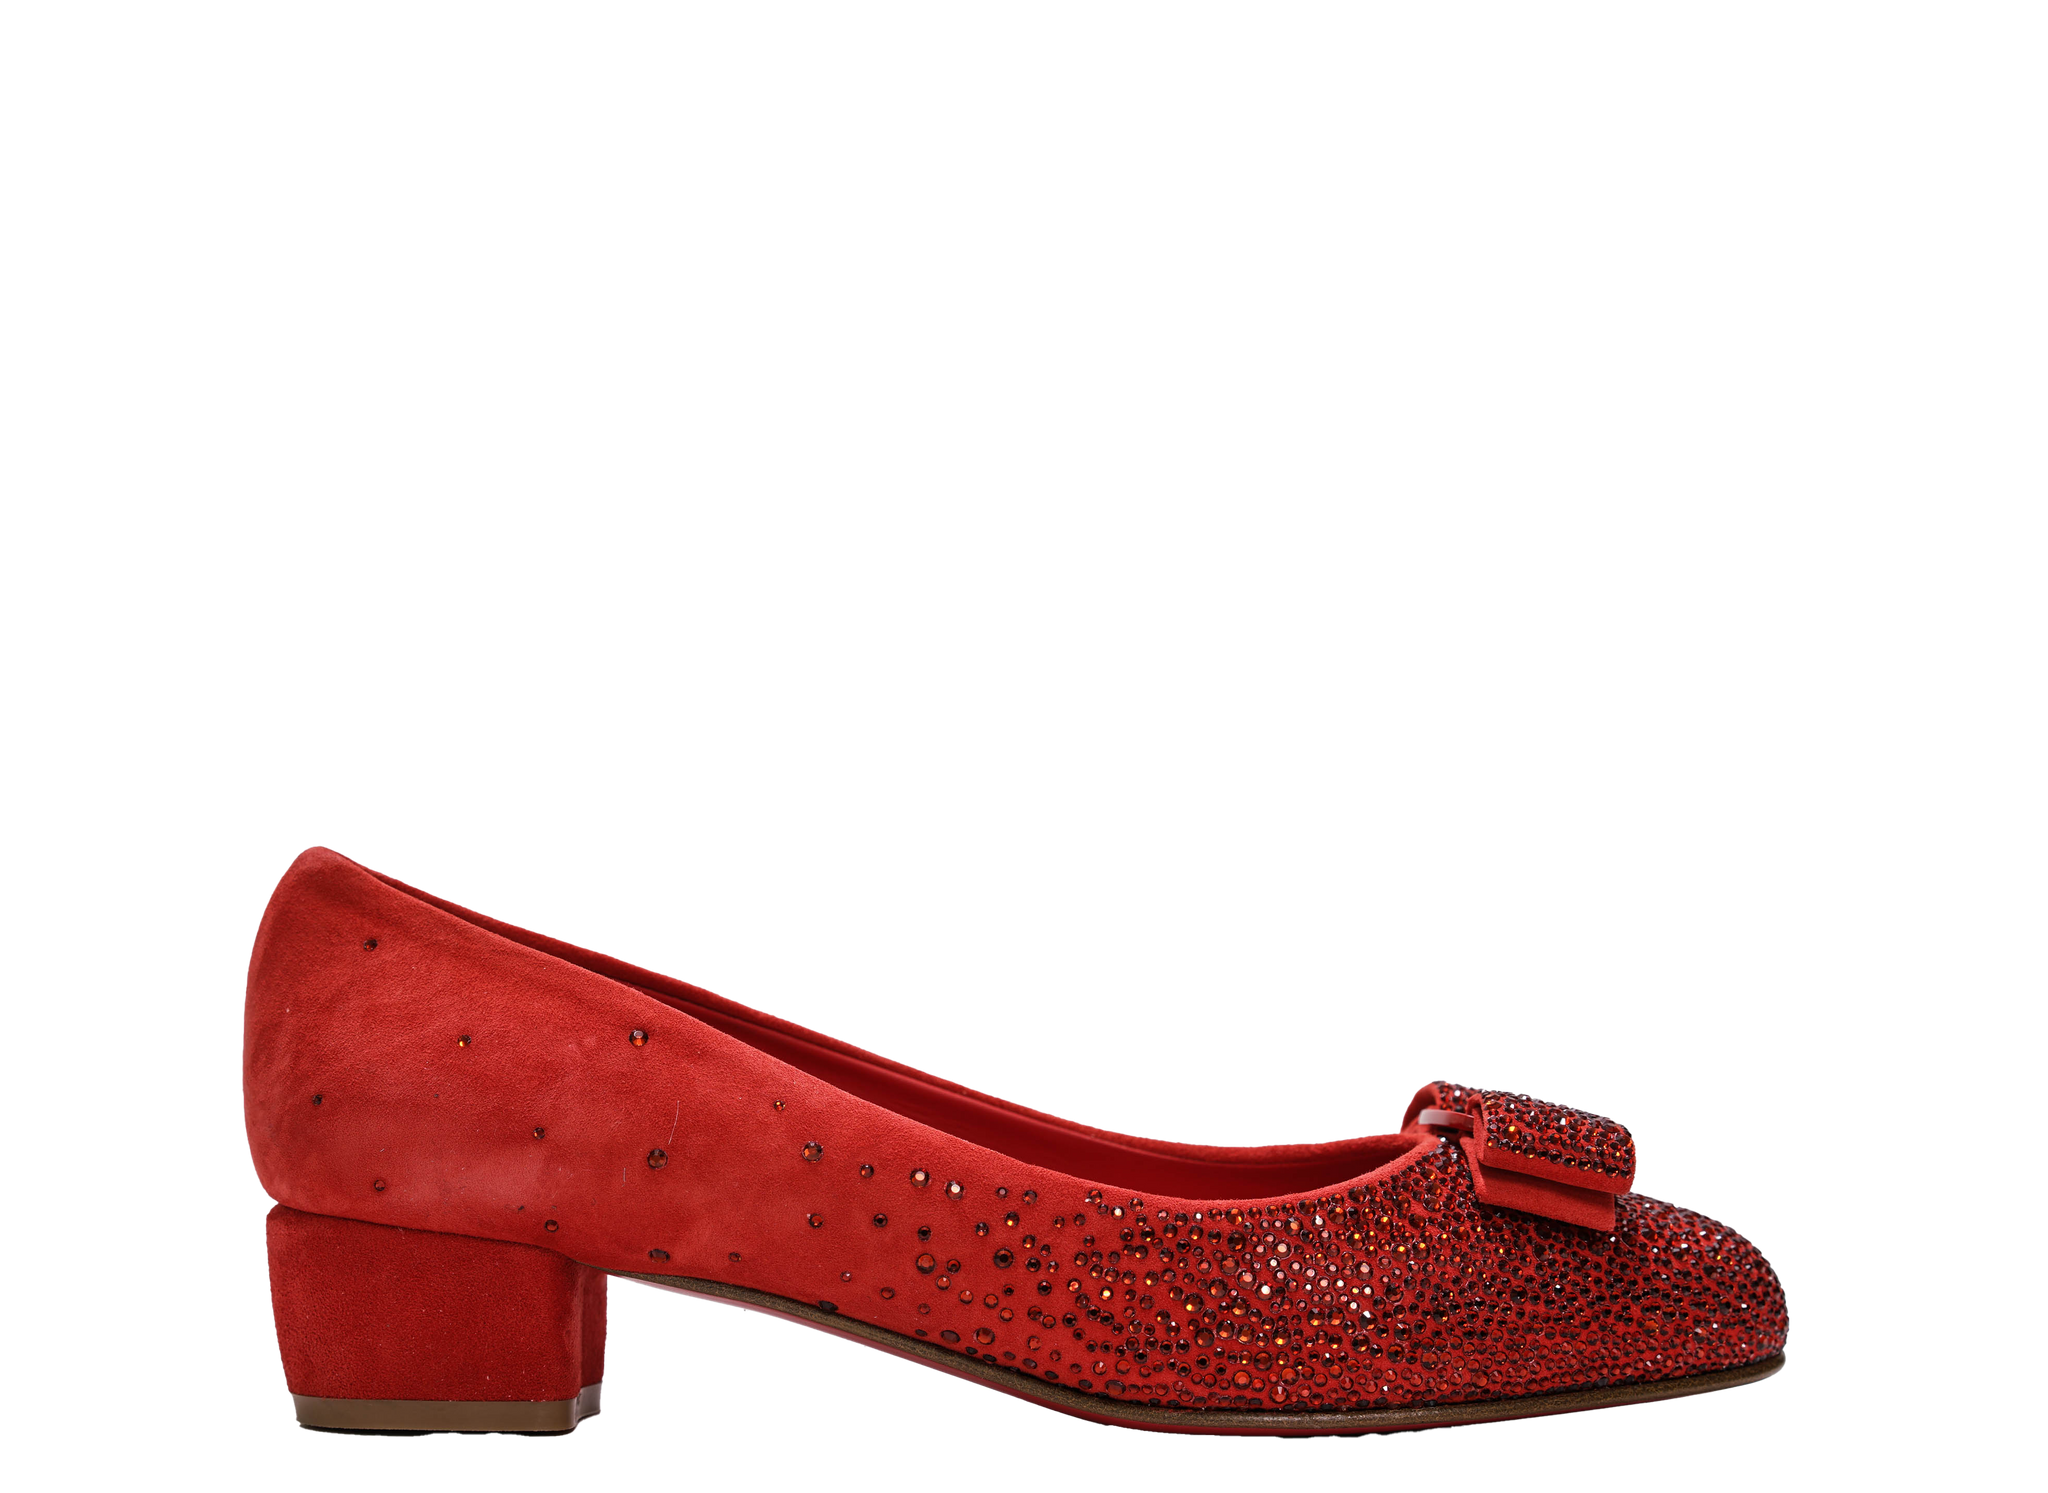 Ferragamo Women's Red Suede Crystal Shoe Vara 3.0cm 0761507